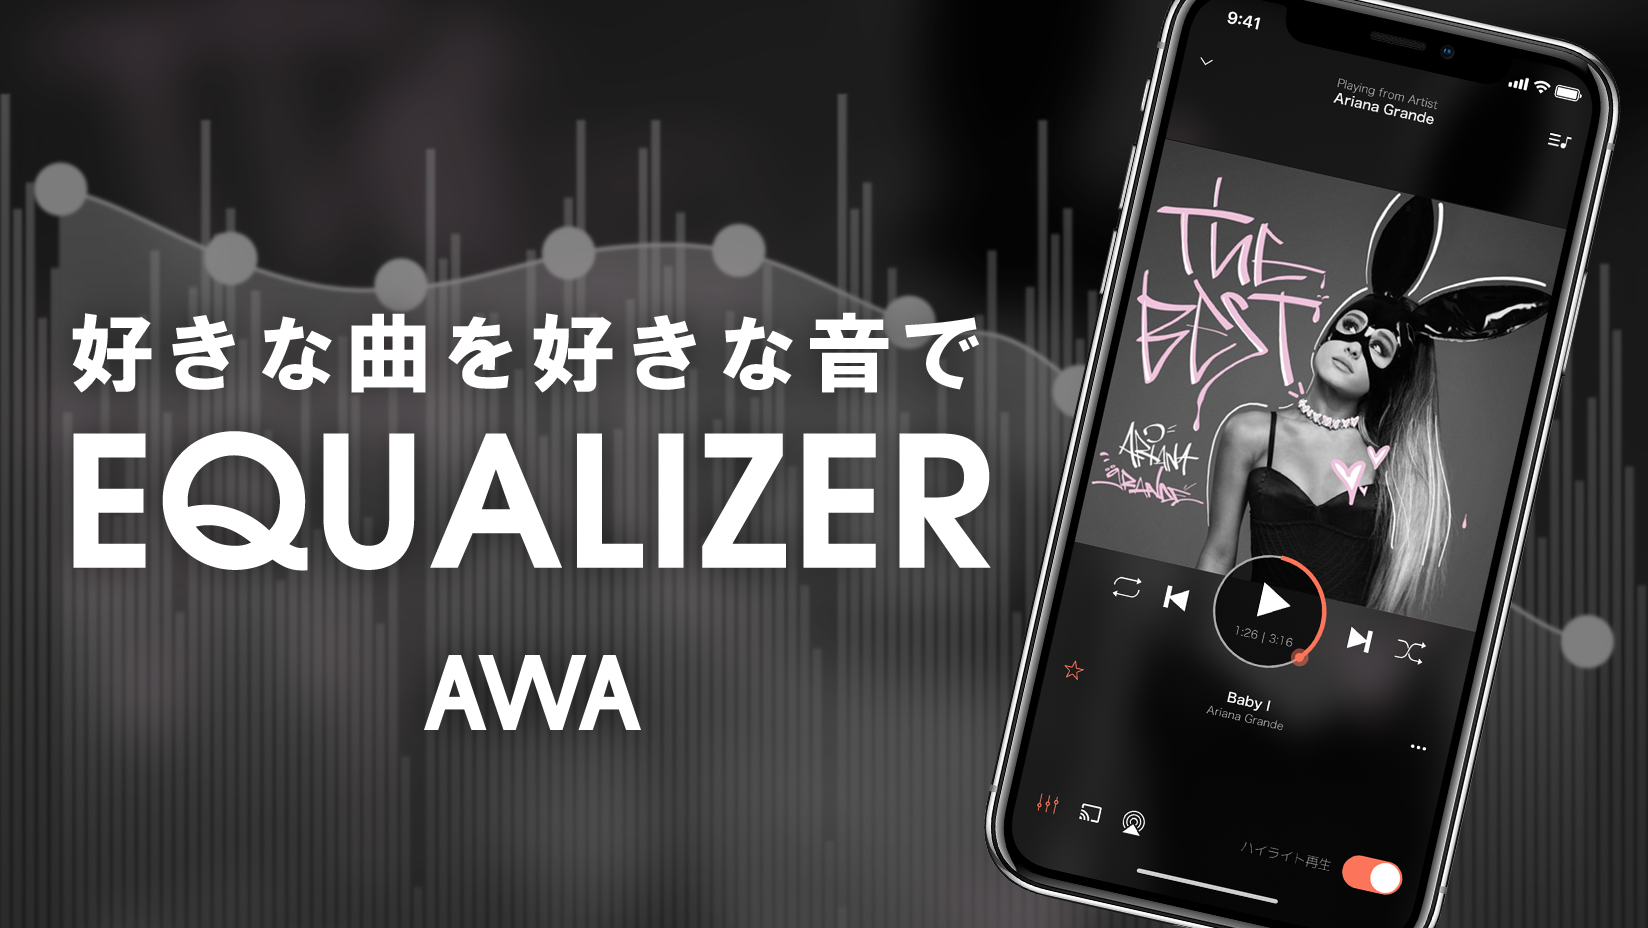 イコライザ 機能の提供を開始 音響機器メーカー Onkyo との共同開発 News Awa